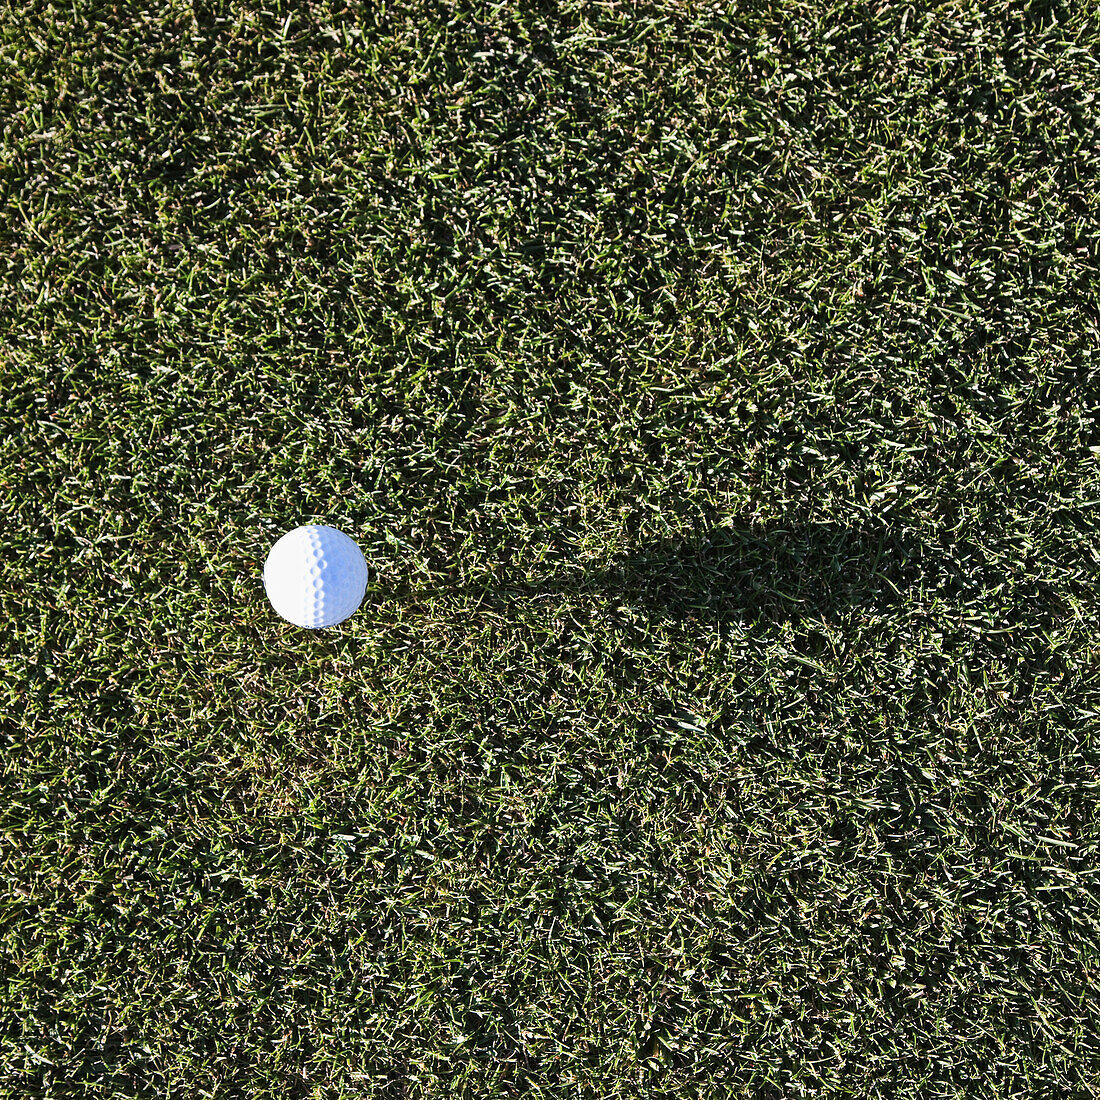 White Golf Ball on Green, Cle Elum, Washington, USA